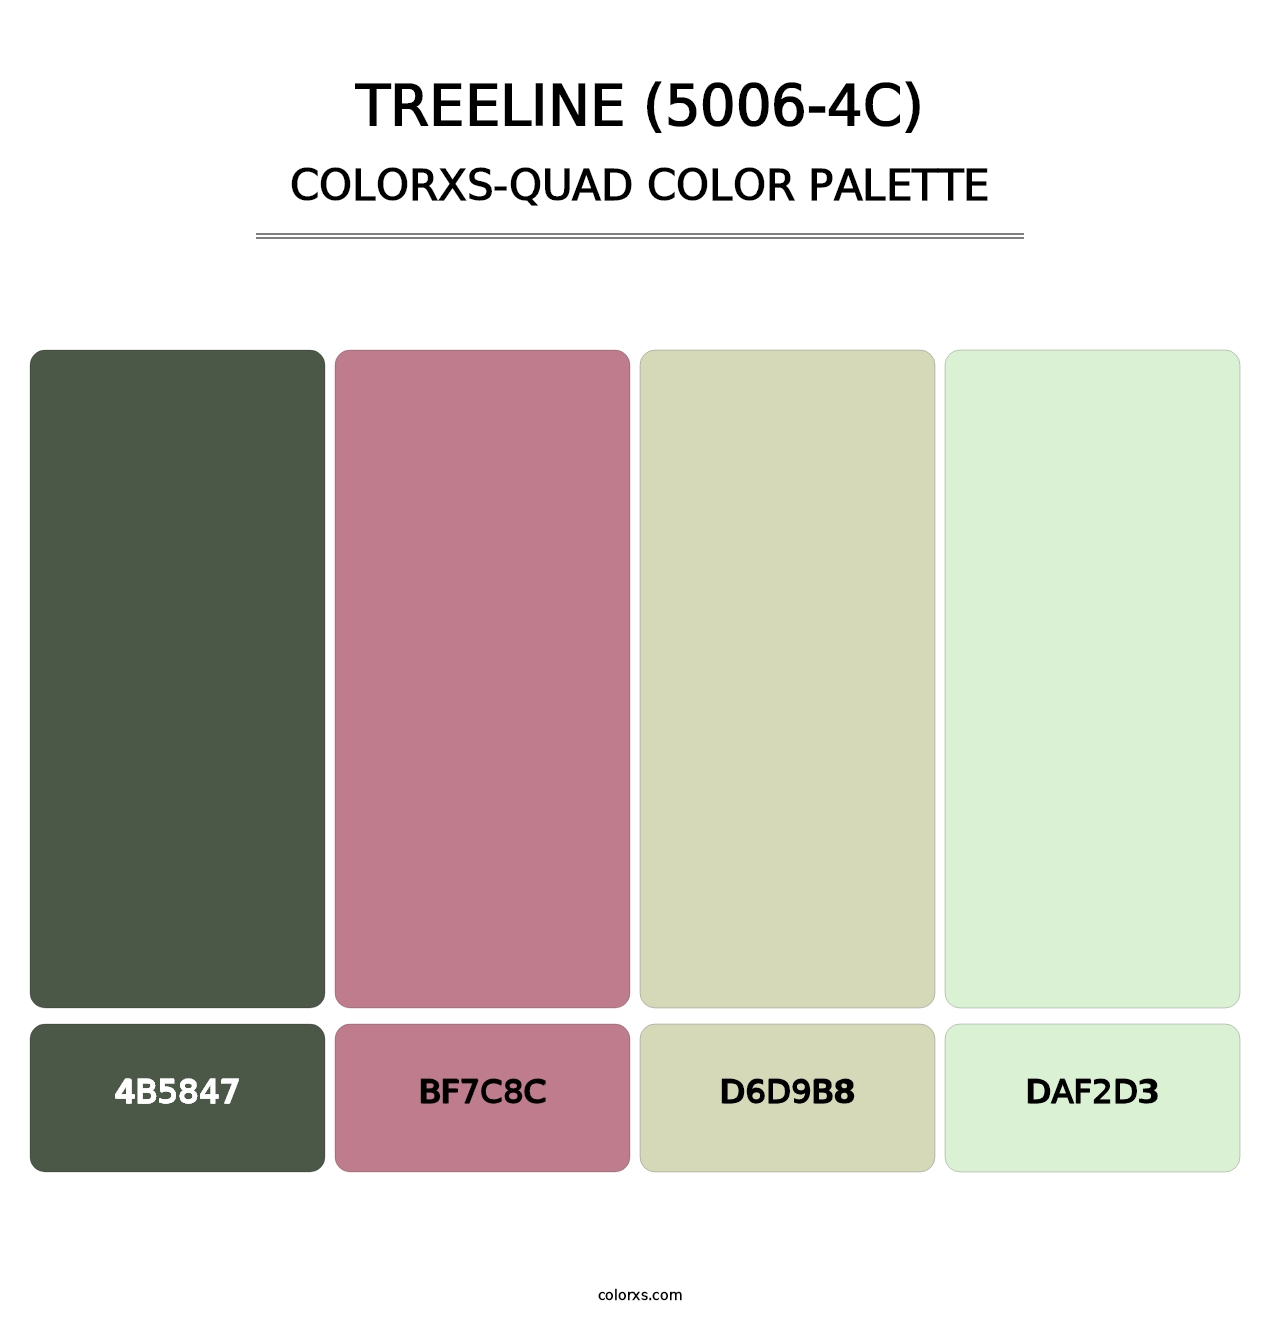 Treeline (5006-4C) - Colorxs Quad Palette